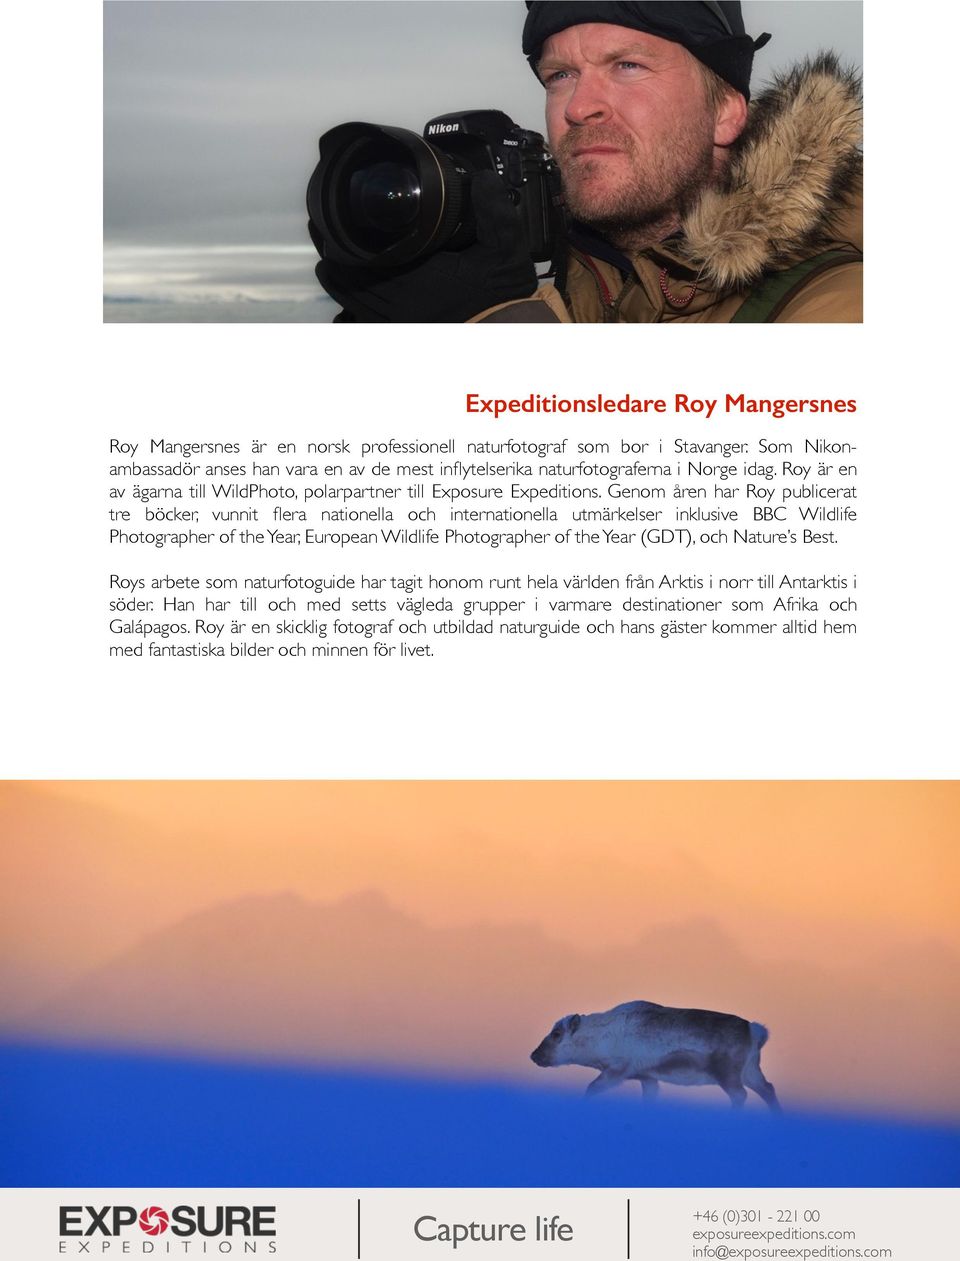 Genom åren har Roy publicerat tre böcker, vunnit flera nationella och internationella utmärkelser inklusive BBC Wildlife Photographer of the Year, European Wildlife Photographer of the Year (GDT),